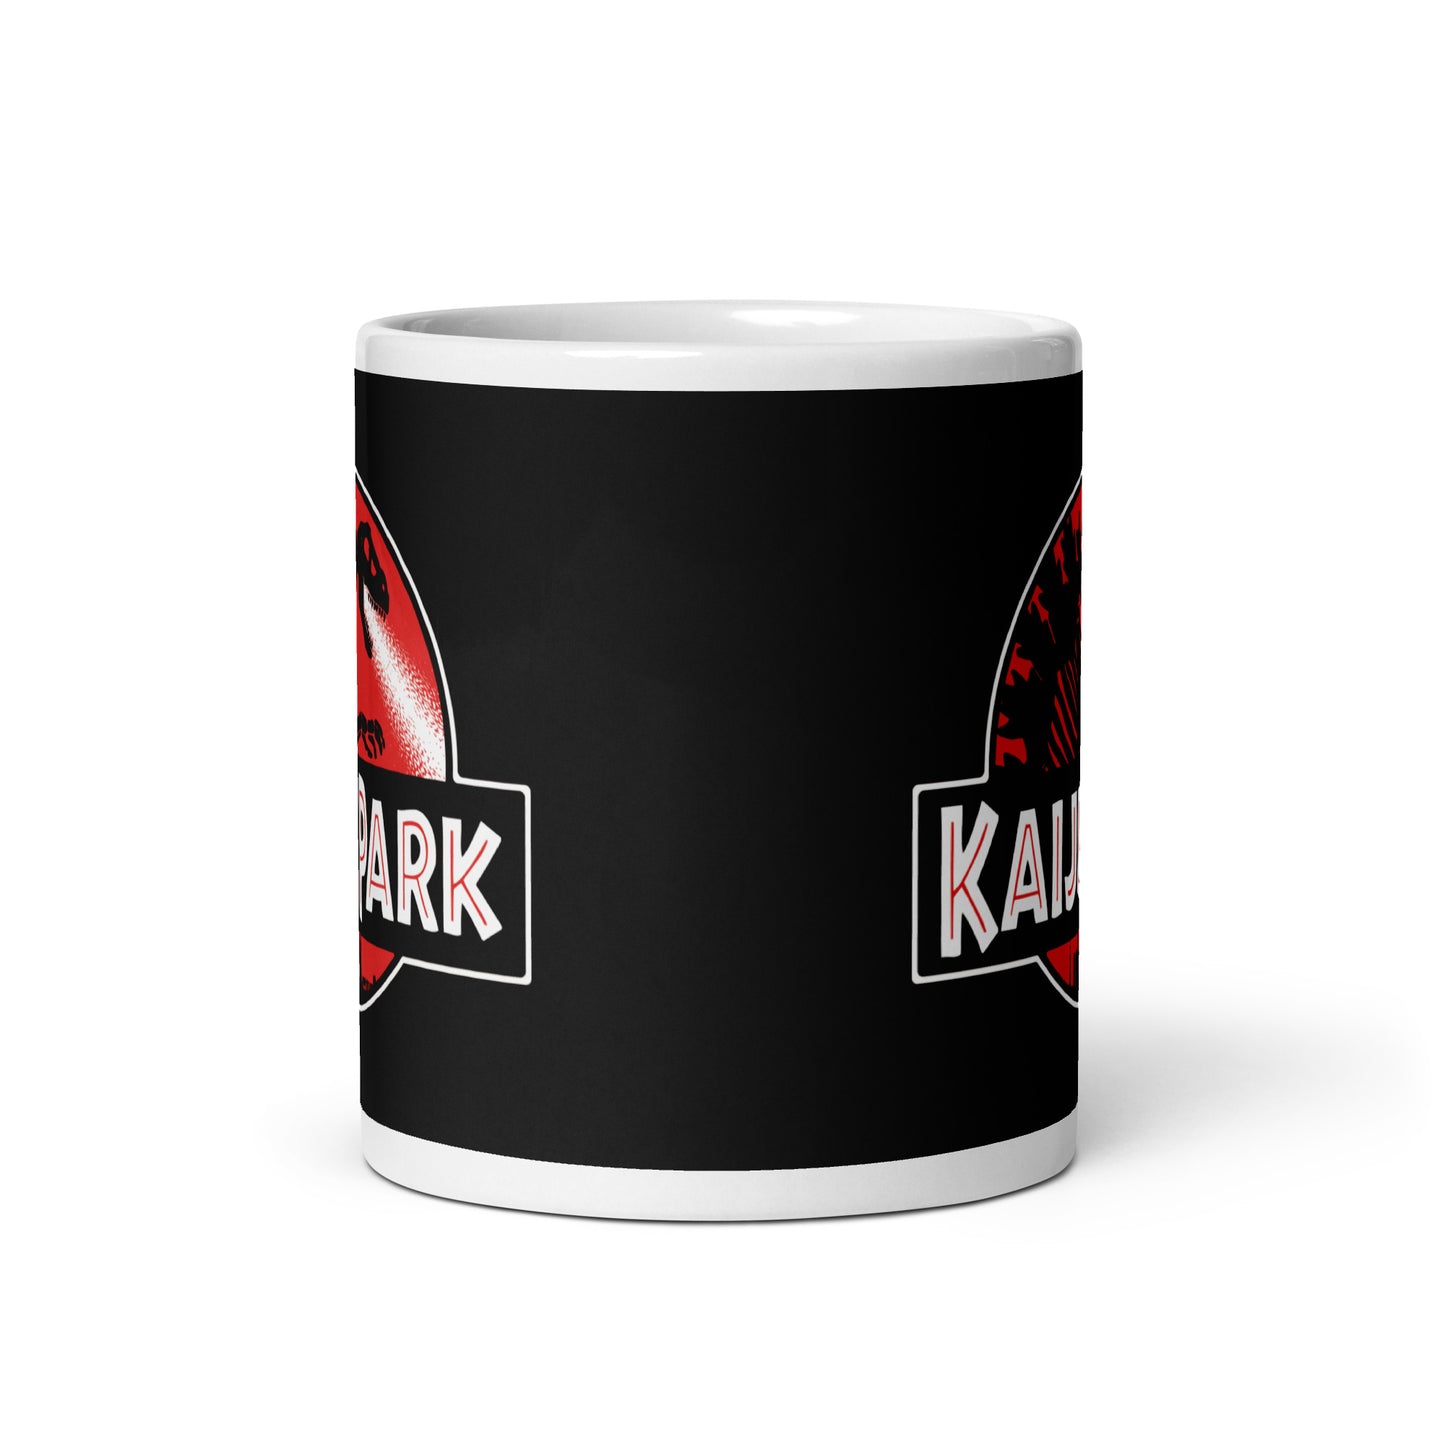 Kaiju Park Mug